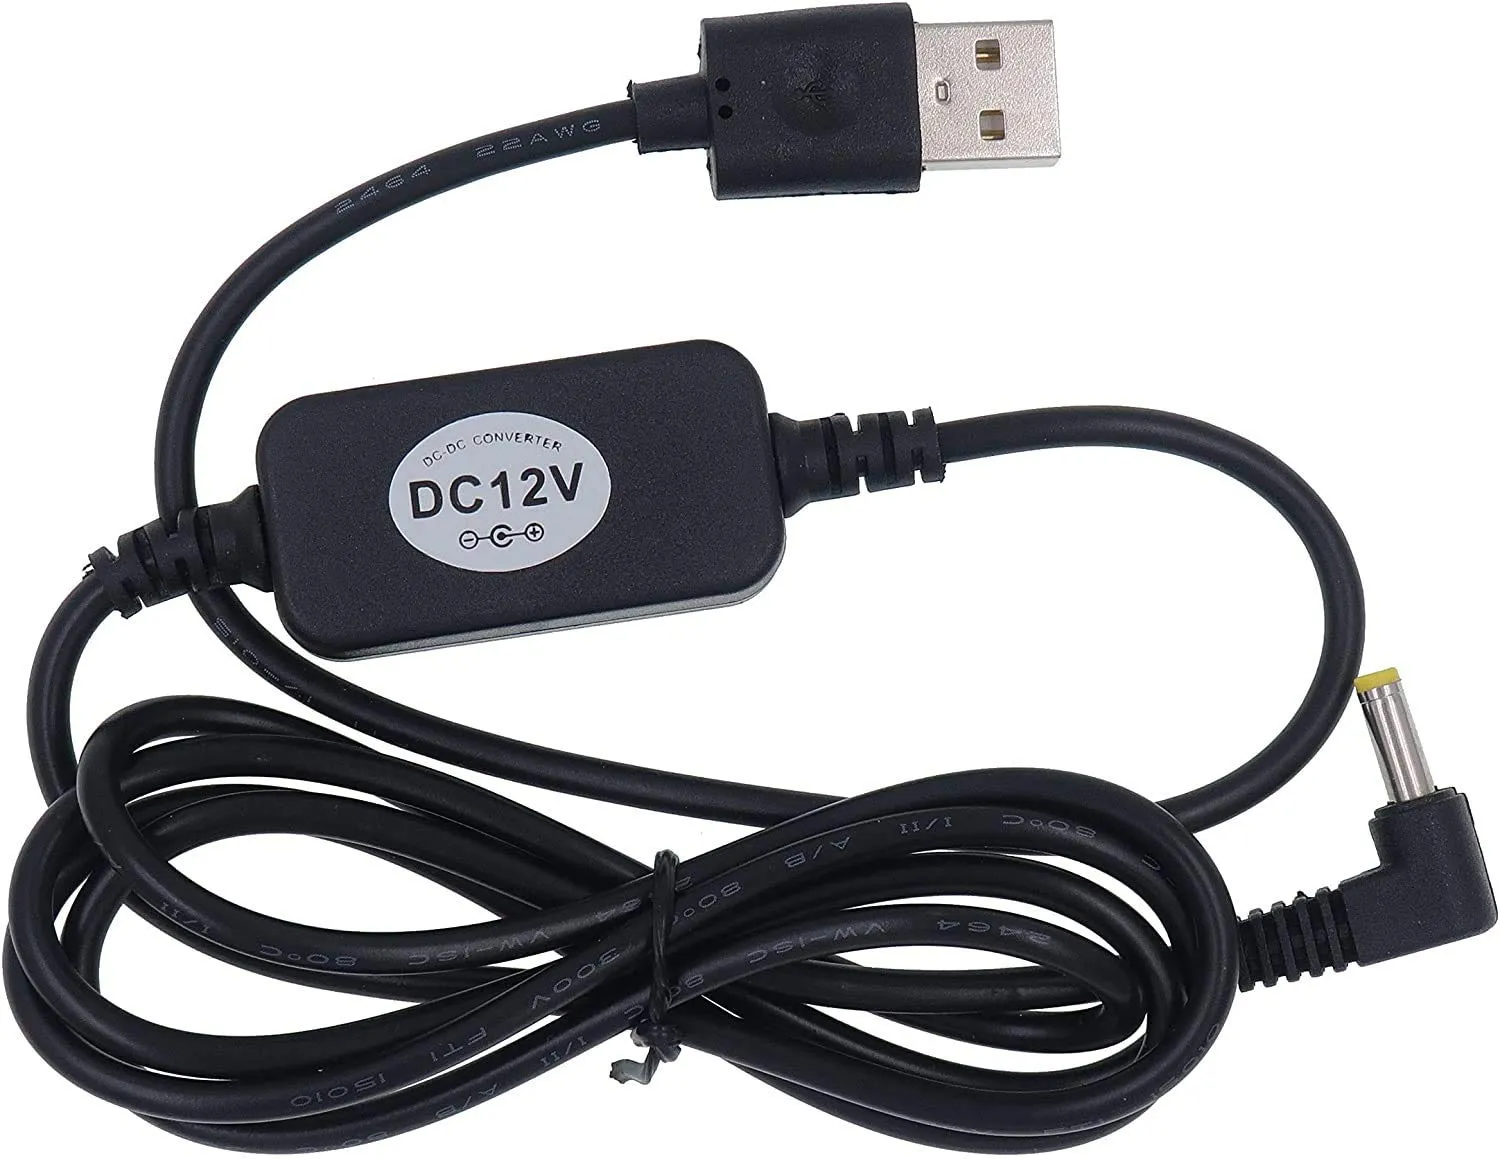 Câble d'alimentation usb 5v à dc 12v, 4mm x 1, 7mm, compatible avec les appareils dot, convertisseur élévateur de tension usb, adaptateur d'alimentation